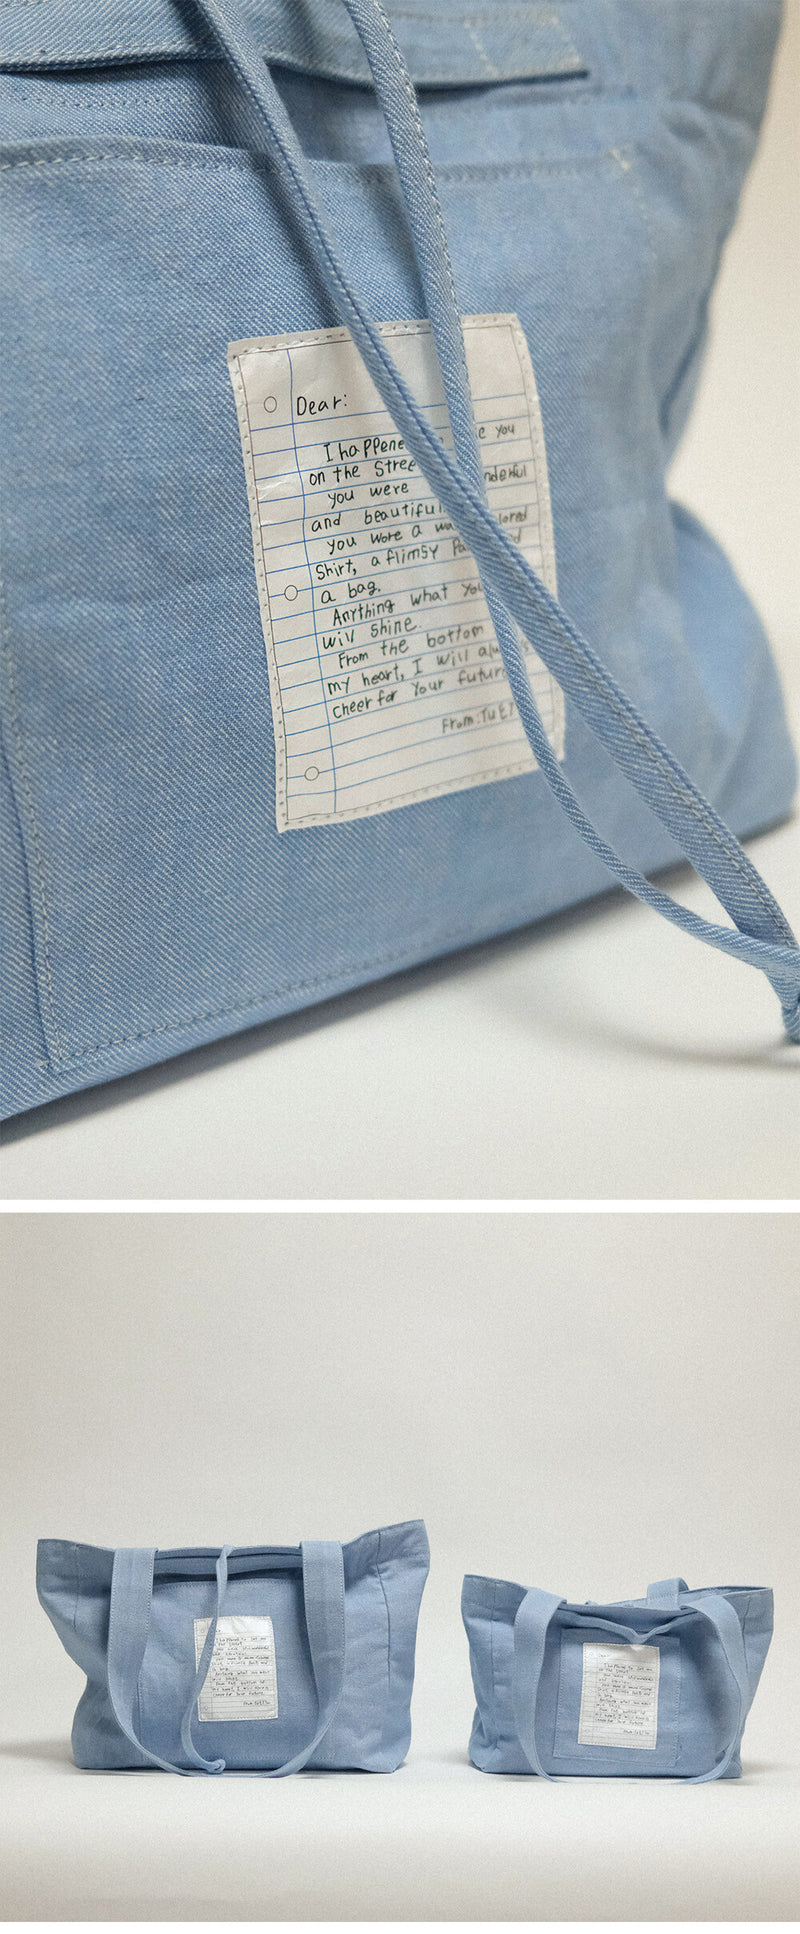 (スモール) ビンテージキャンバスバッグ / (Small) Vintage Canvas Bag - Denim